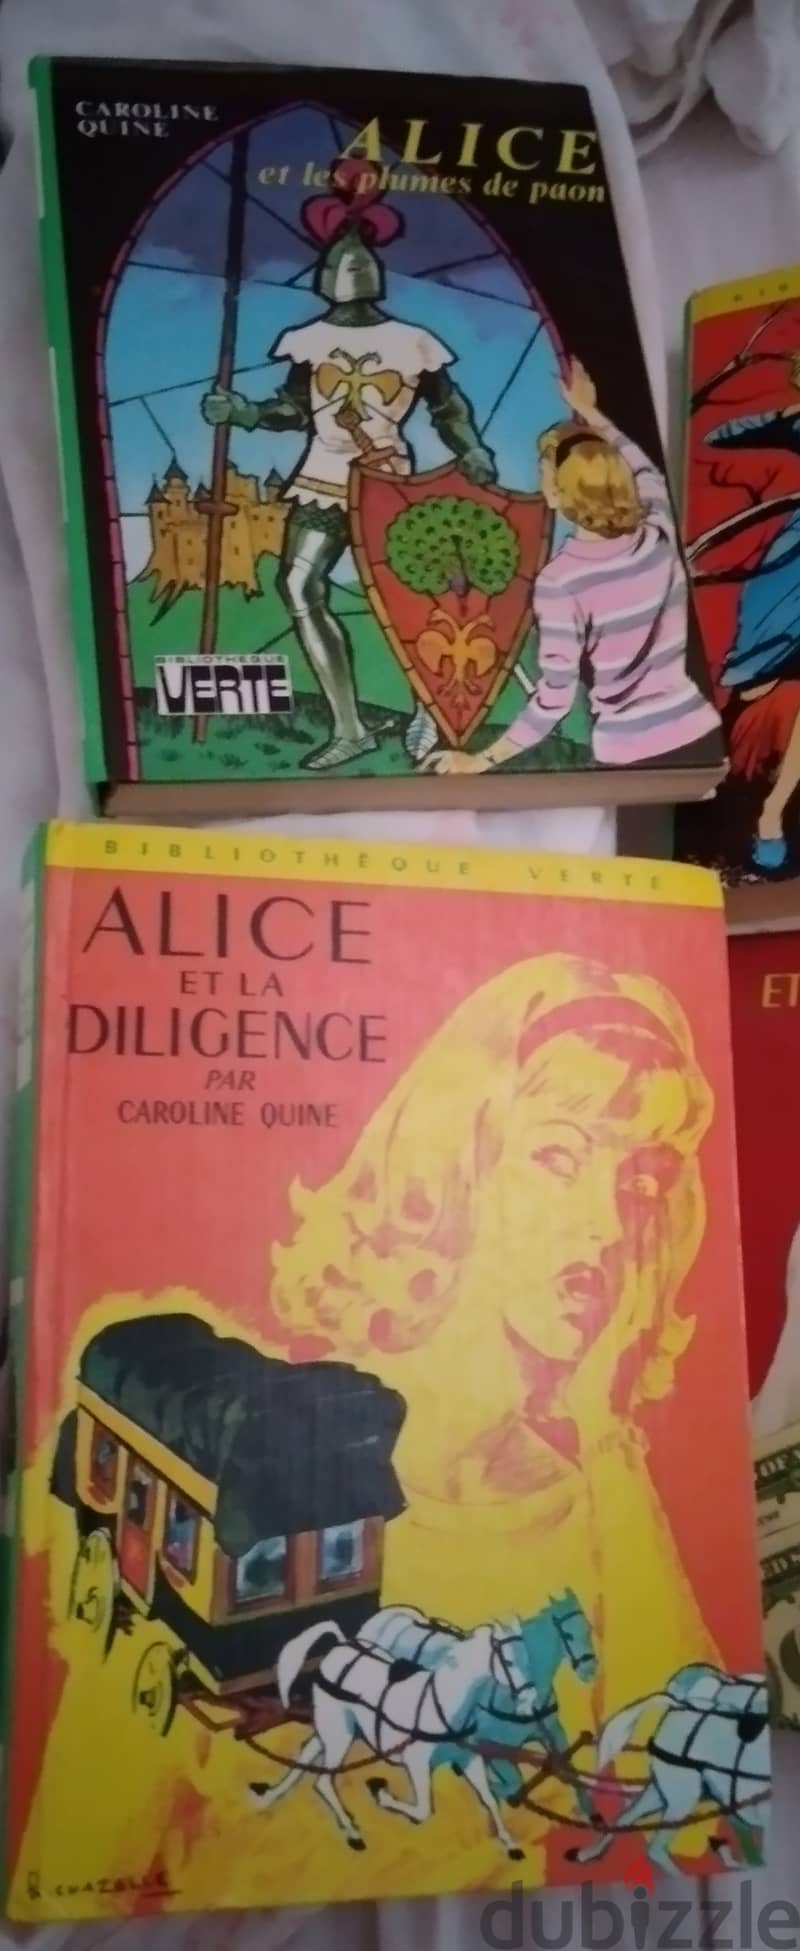 Alice. bibliotheque verte 3